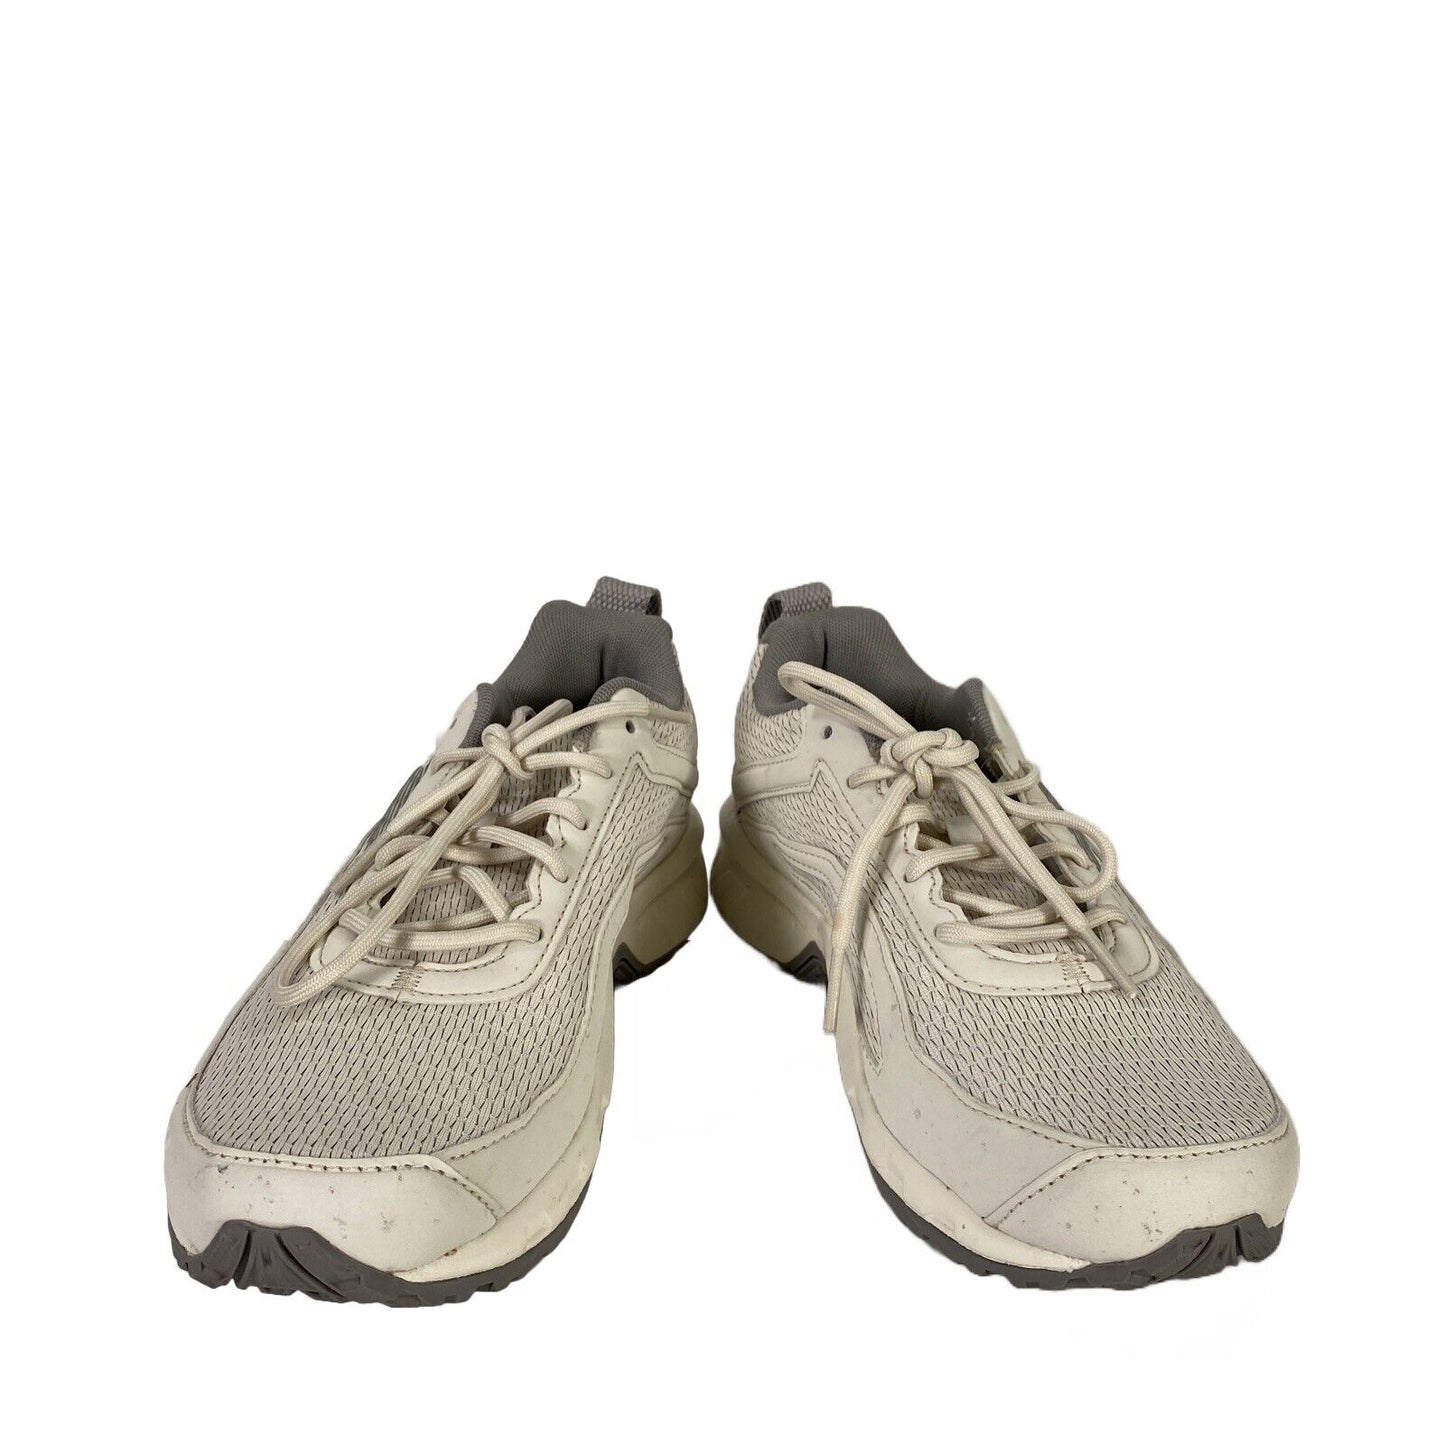 Reebok Riderider 6.0 - Zapatillas deportivas con cordones para mujer, color blanco y gris, 7